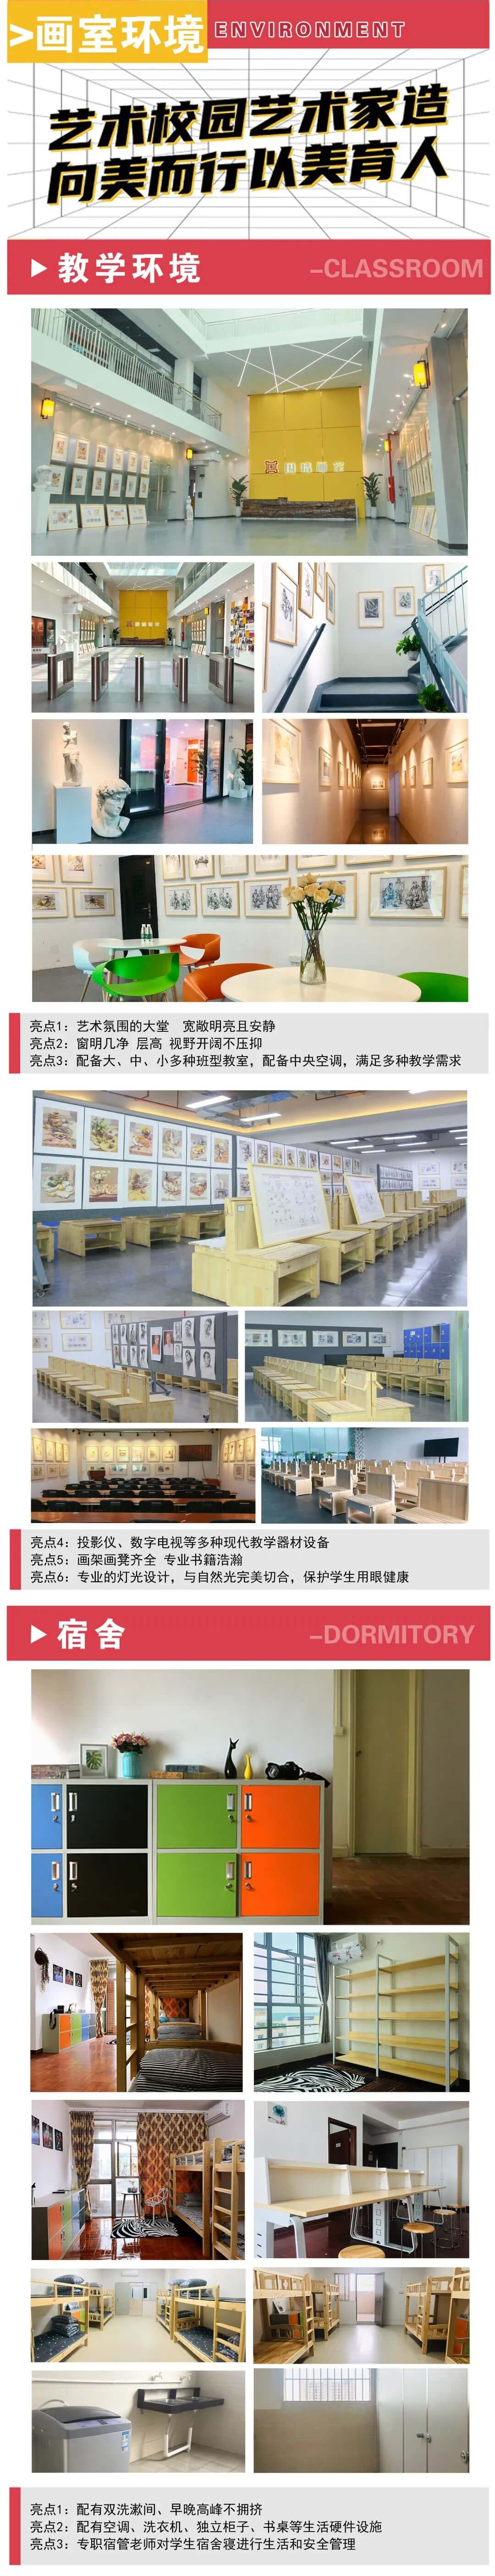 广州美术培训画室